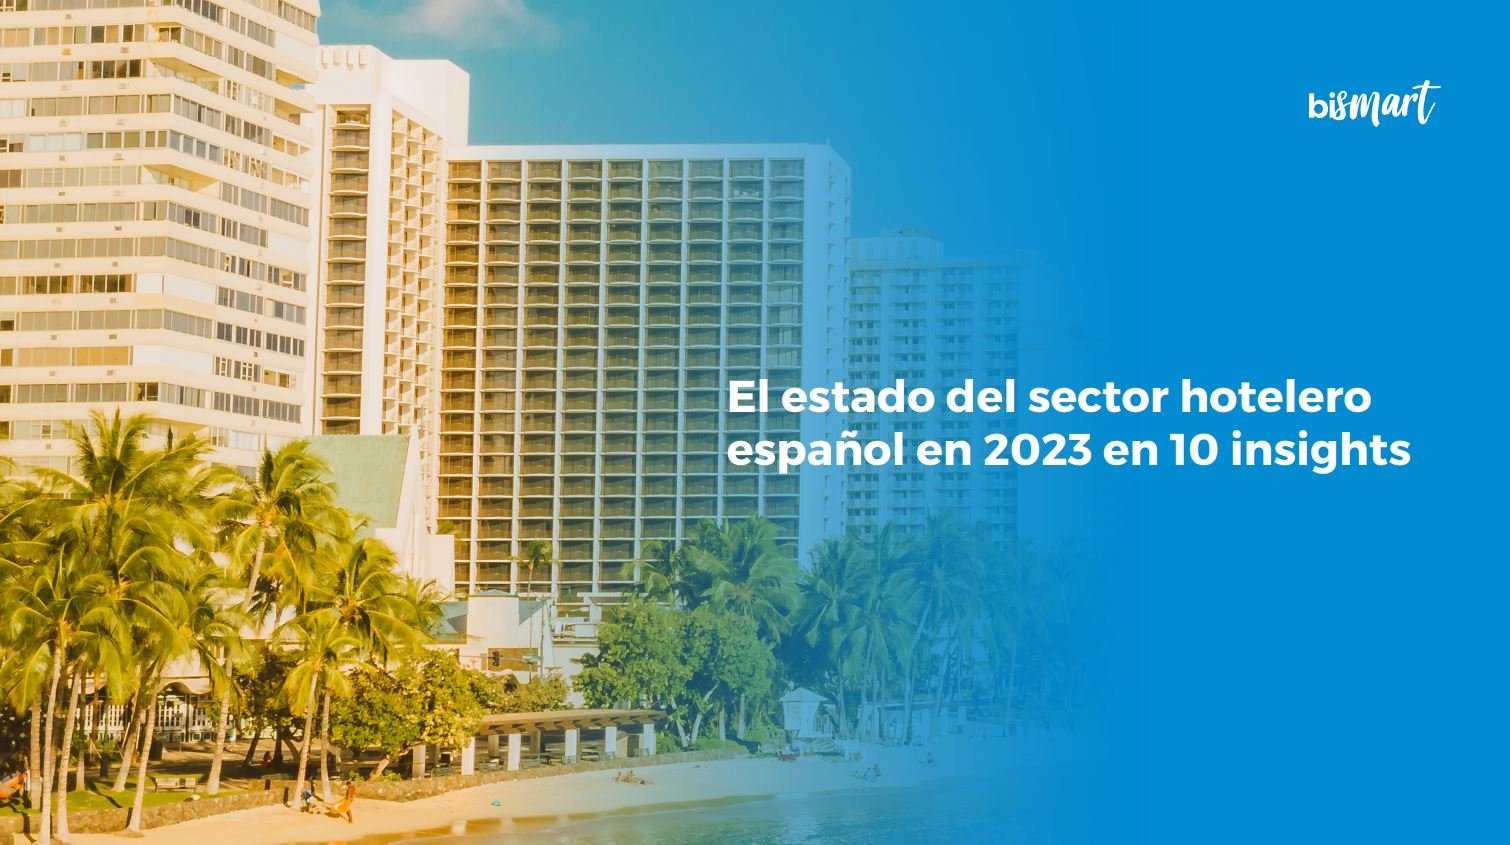 el estado del sector hotelero español en 2023 en 10 insights